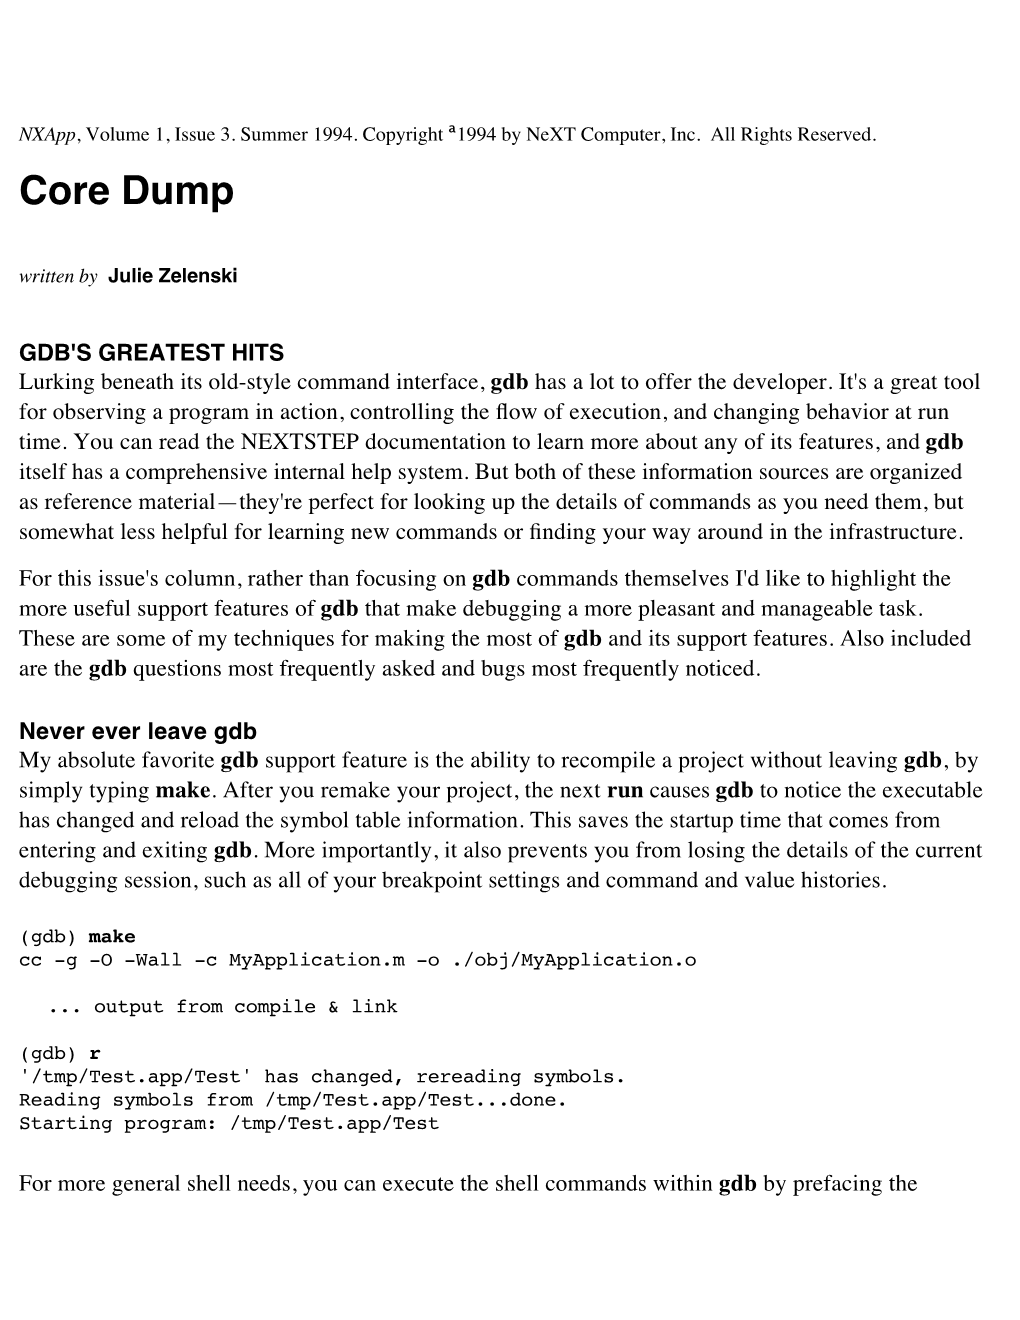 Core Dump Written by Julie Zelenski